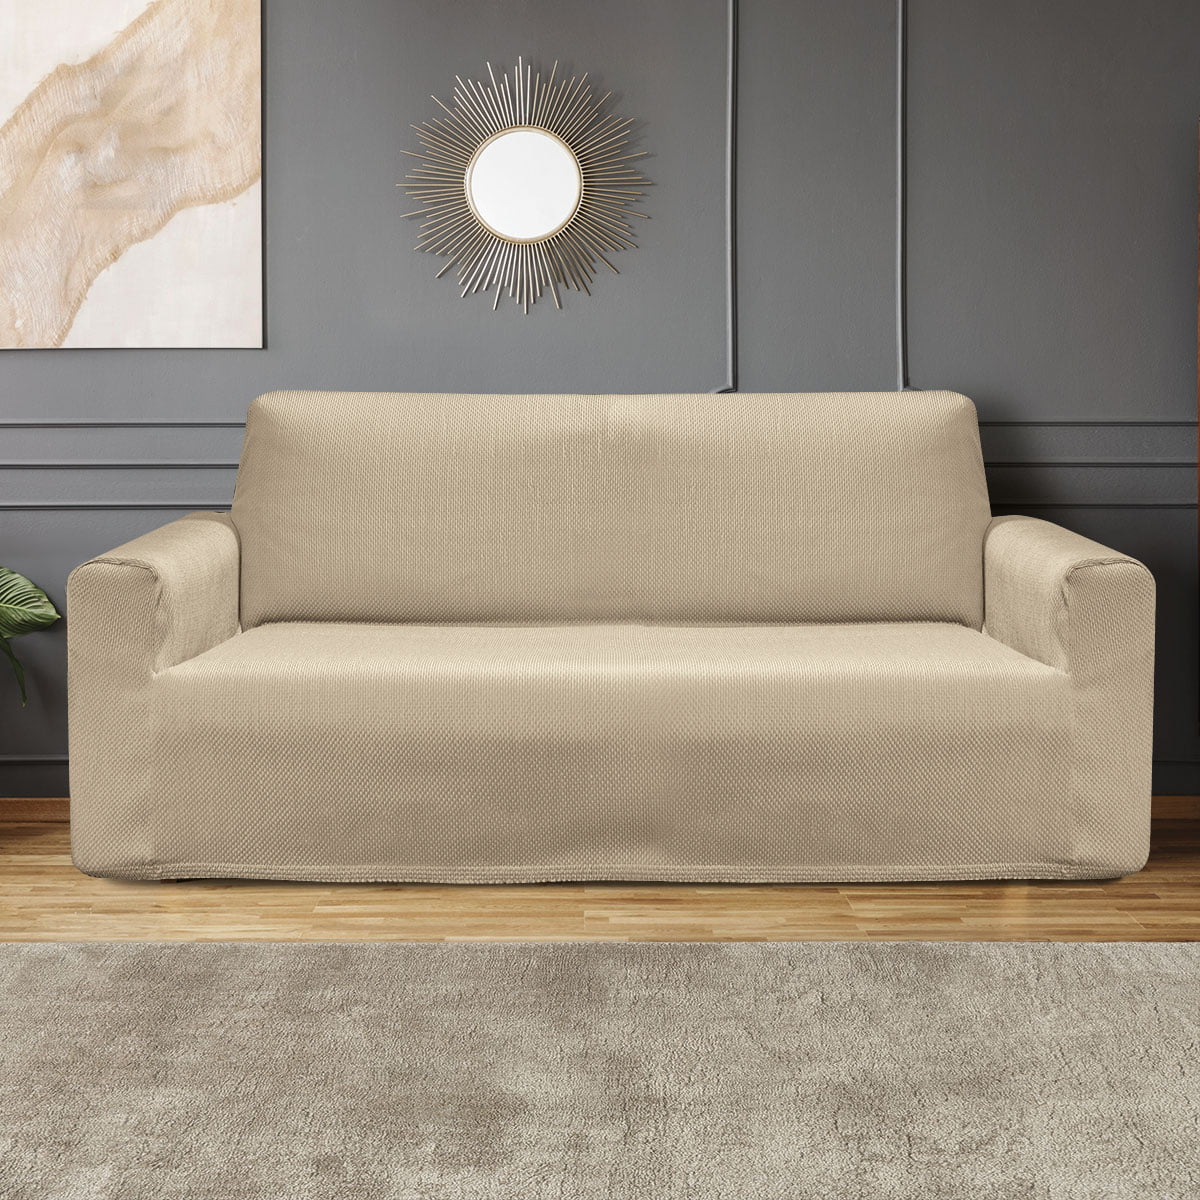 Ελαστικό κάλυμα τετραθέσιου καναπέ σε 5 χρώματα  